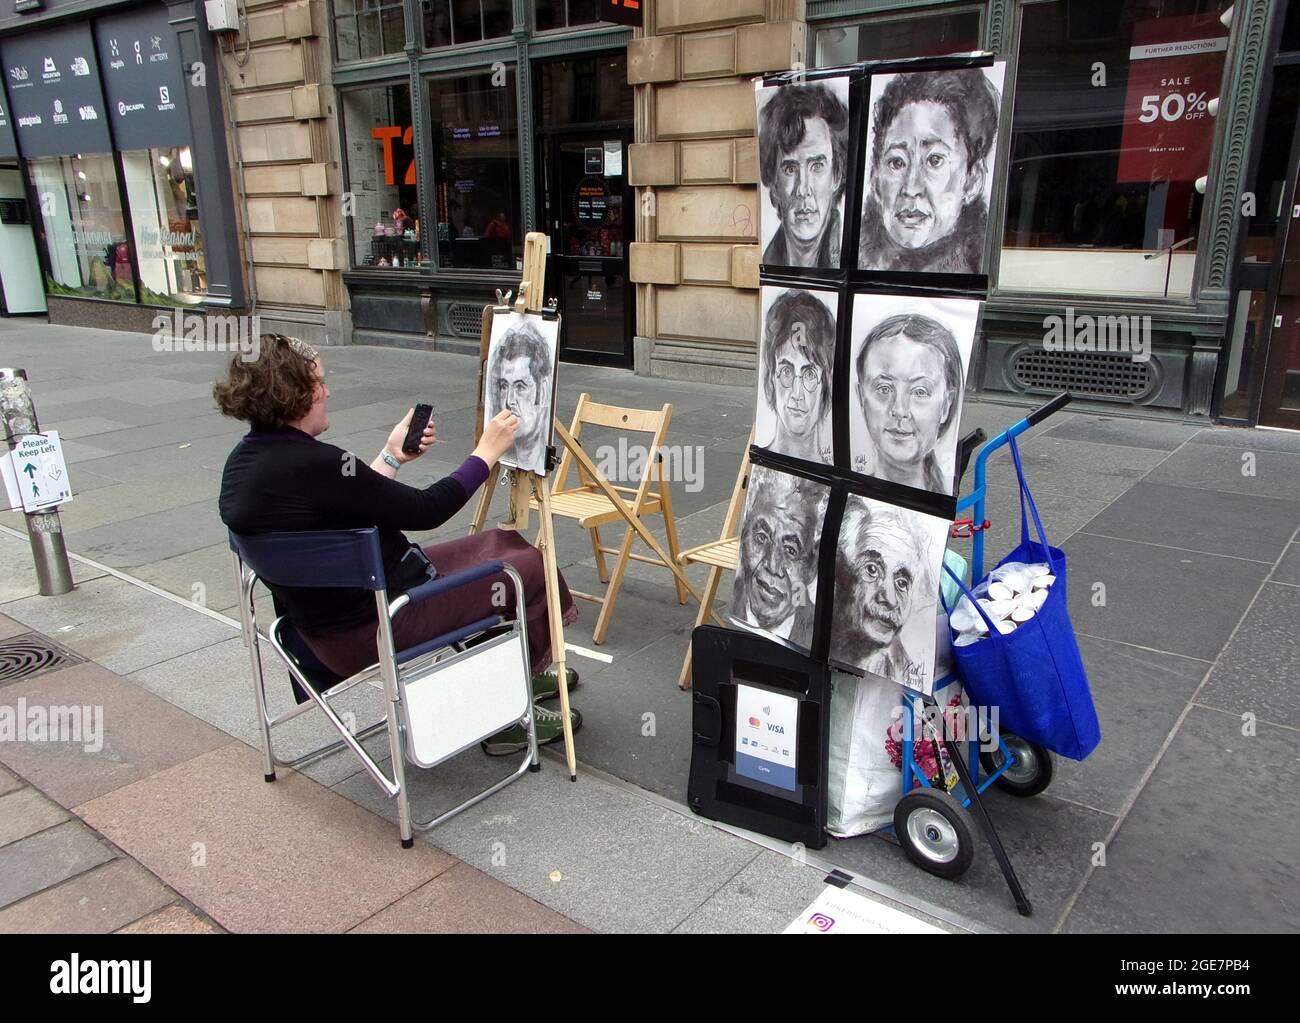 Una artista callejera de la calle Buchanan en Glasgow, dibuja algunos retratos de personas conocidas para animar a los miembros del público a sentarse y posarse para ella. Foto de stock